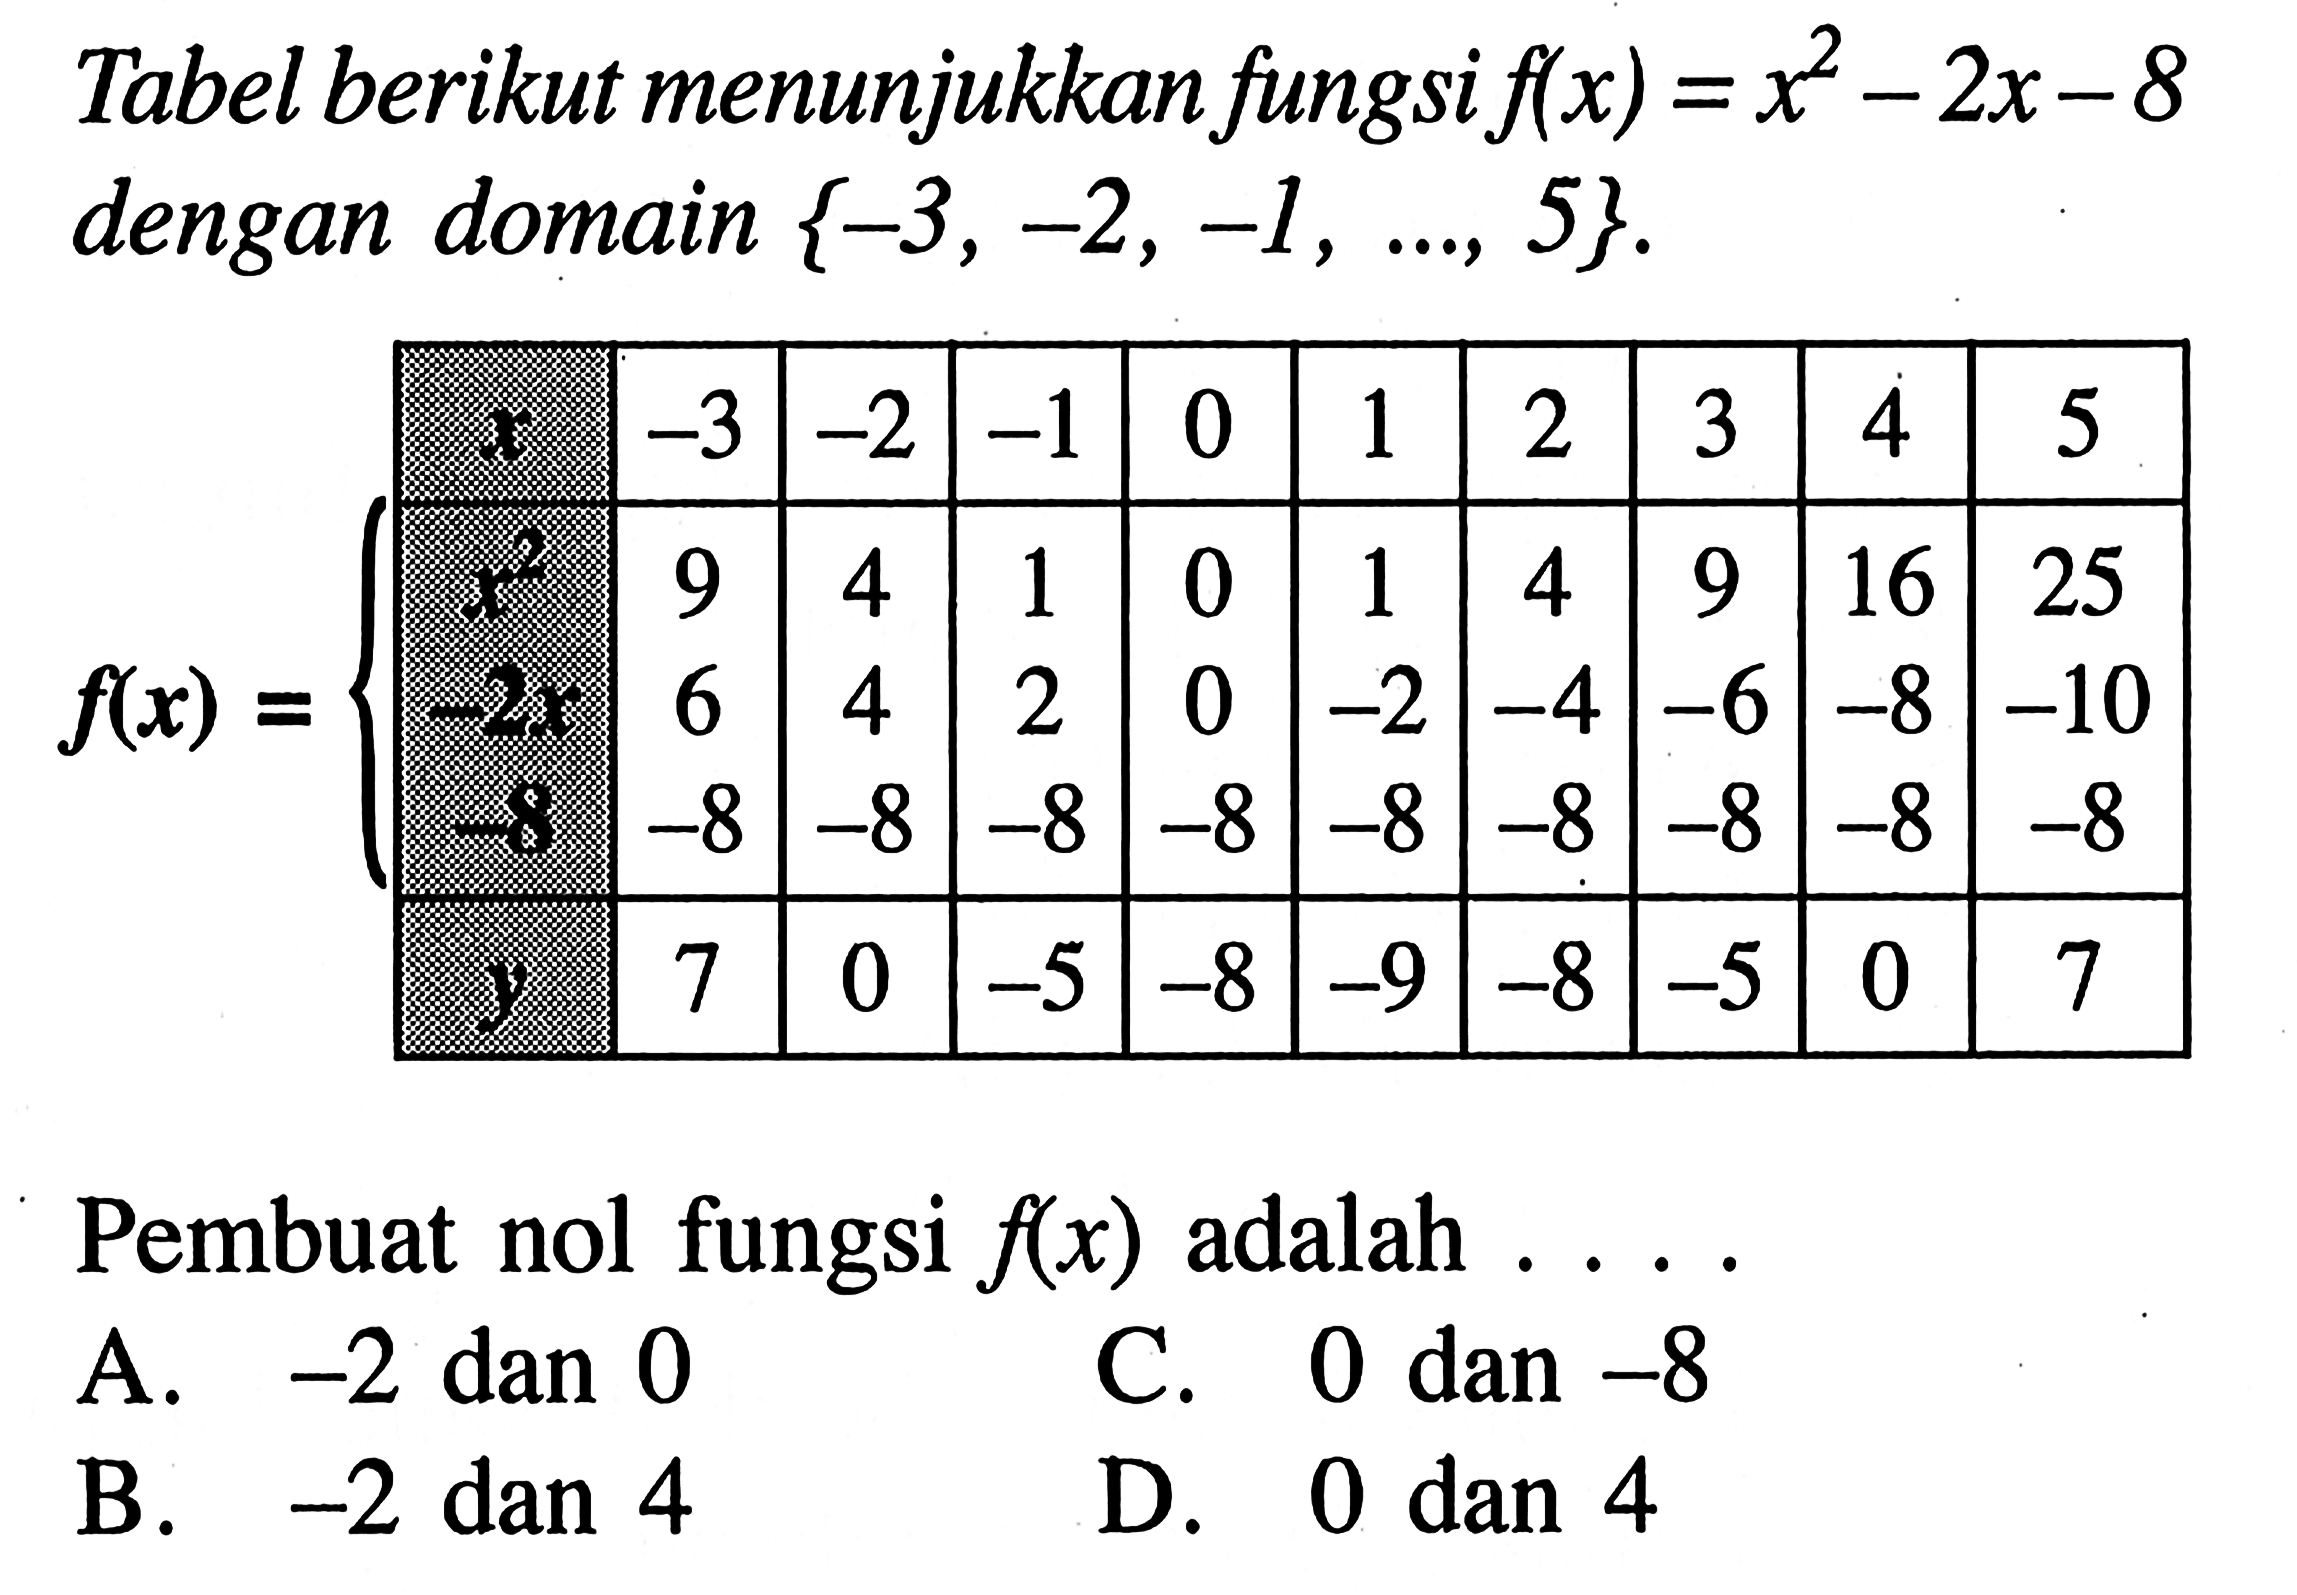 Tabel berikut menunjukan fungsi f(x) = x^2 - 2x - 8 dengan domain {-3, -2, -1, ..., 5}. x -3 -2 -1 0 1 2 3 4 5 x^2 9 4 1 0 1 4 9 16 25 -2x 6 4 2 0 -2 -4 -6 -8 -10 -8 -8 -8 -8 -8 -8 -8 -8 -8 -8 y 7 0 -5 -8 -9 -8 -5 0 7 Pembuat nol fungsi f(x) adalah .... A. -2 dan 0 B. -2 dan 4 C. 0 dan -8 D. 0 dan 4